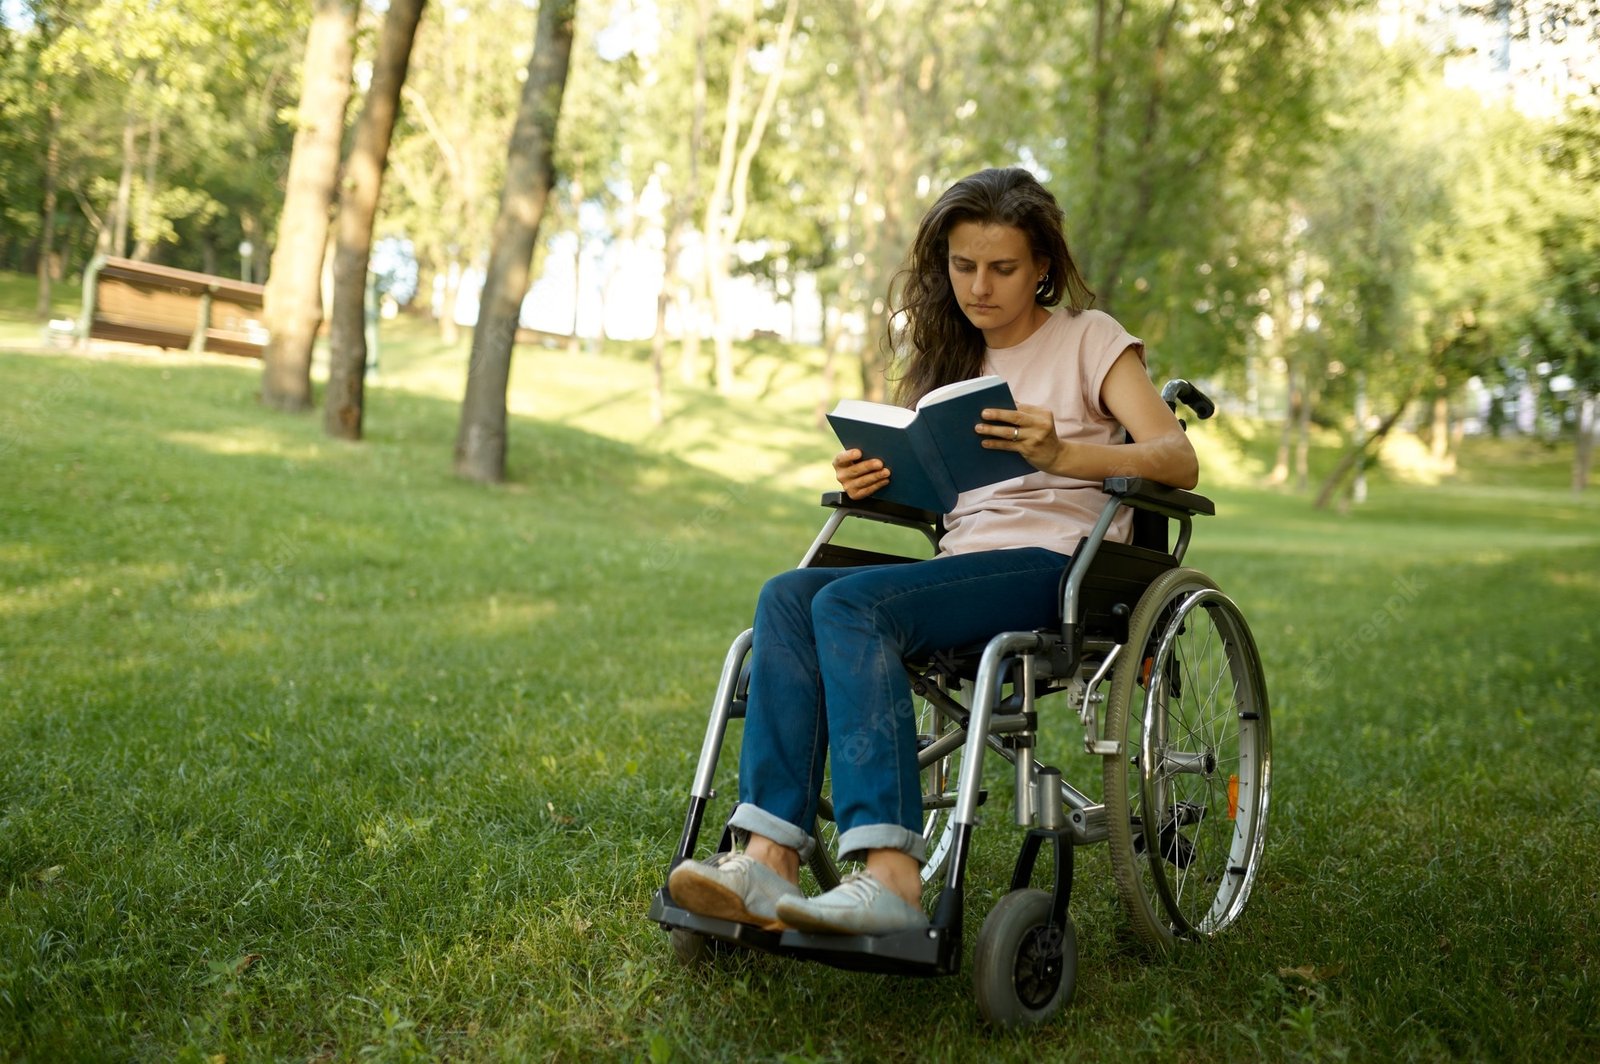 mulher-com-deficiencia-em-cadeira-de-rodas-lendo-um-livro-no-parque-pessoas-paralisadas-e-incapacitadas-superacao-de-deficiencias-de-lazer-para-deficientes-fisicos-ao-ar-livre_266732-28929